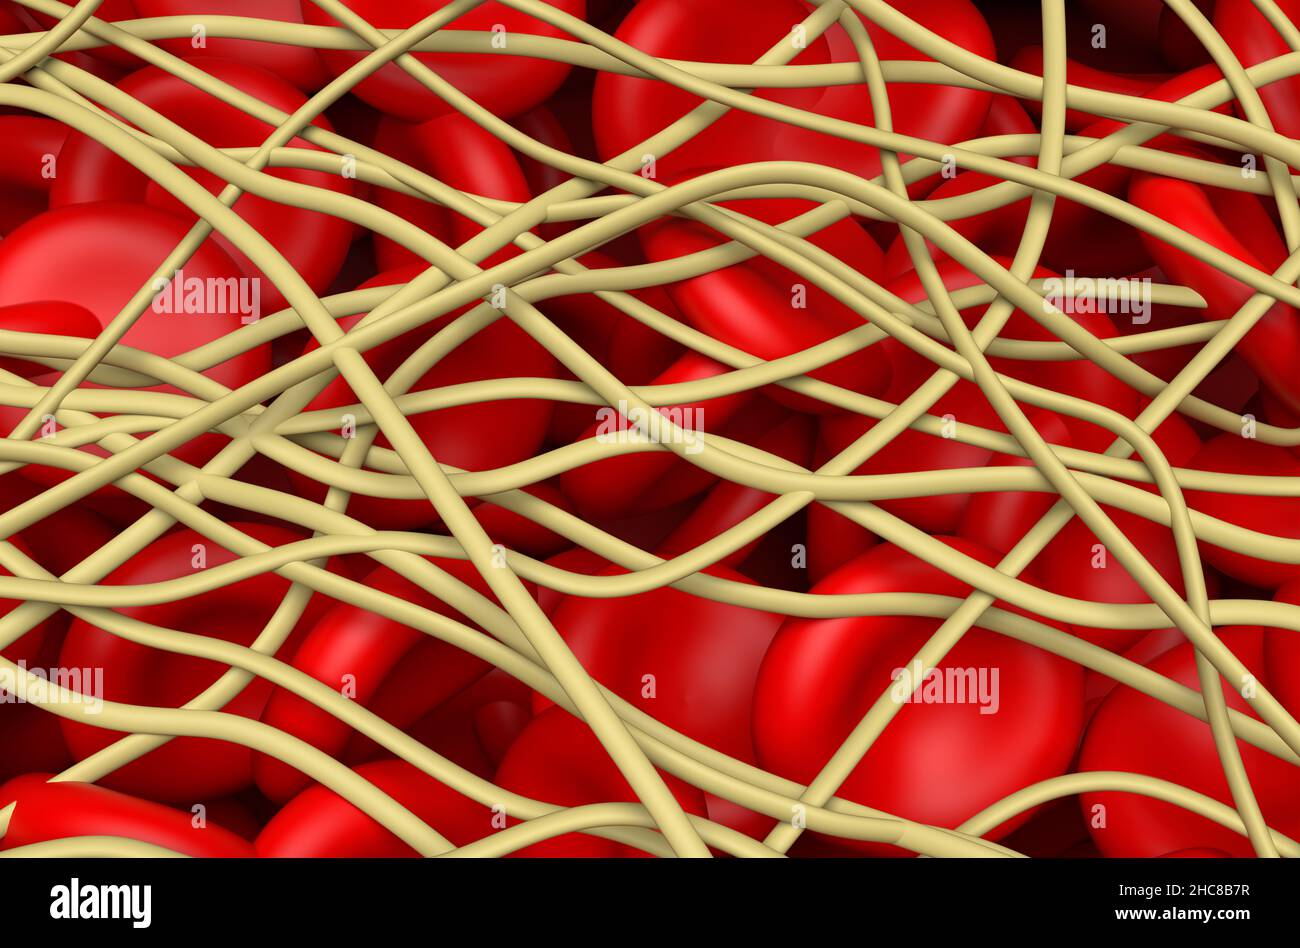 Caillot de sang.Les globules rouges sont piégés dans les filaments de la protéine de fibrine.Illustration de la vue isométrique 3D Banque D'Images